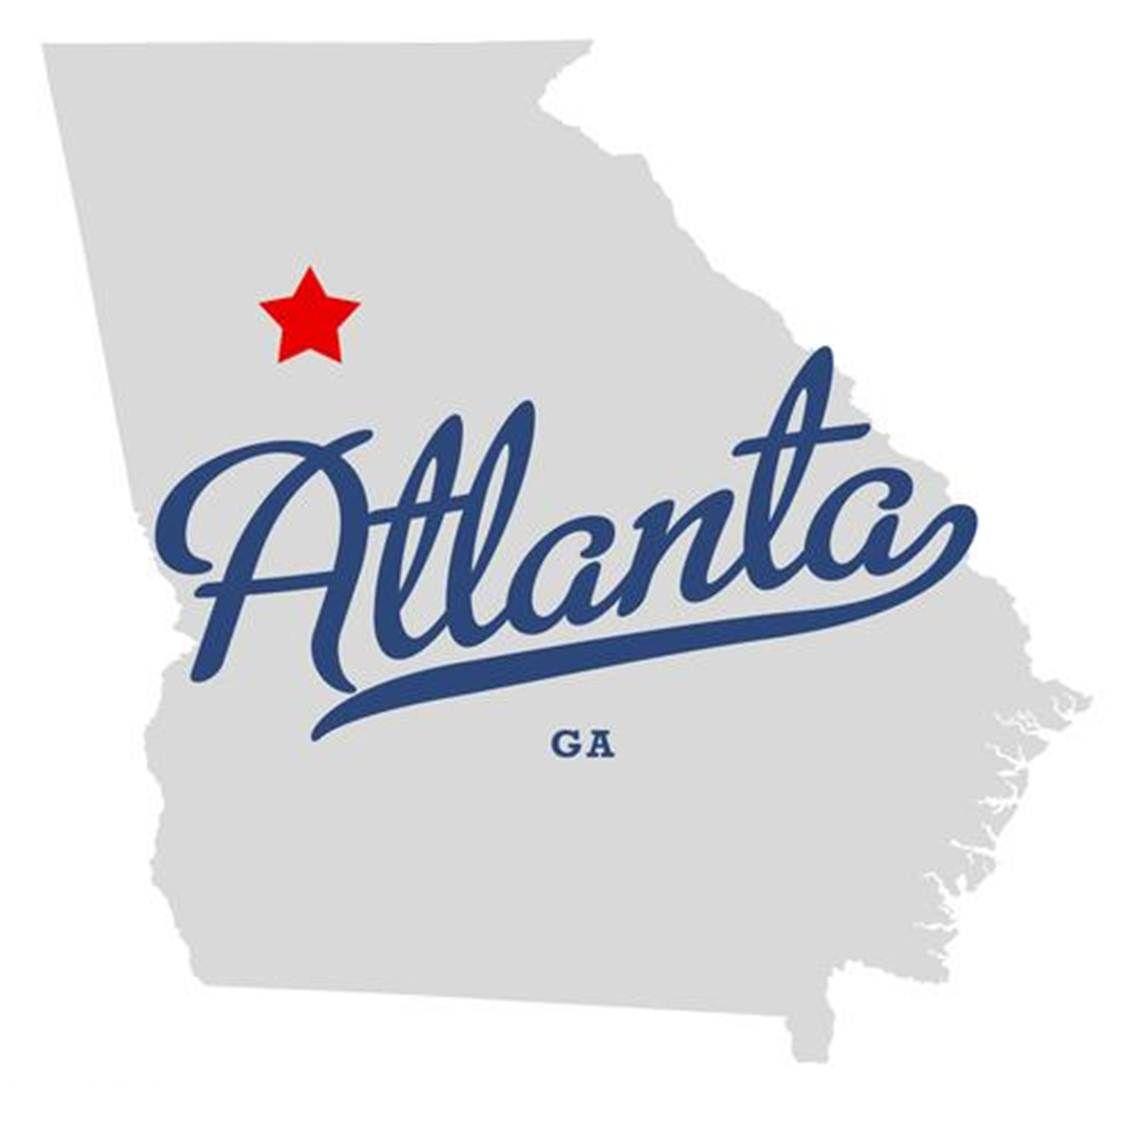 USA Georgia Logo - COCOA Atlanta, Georgia